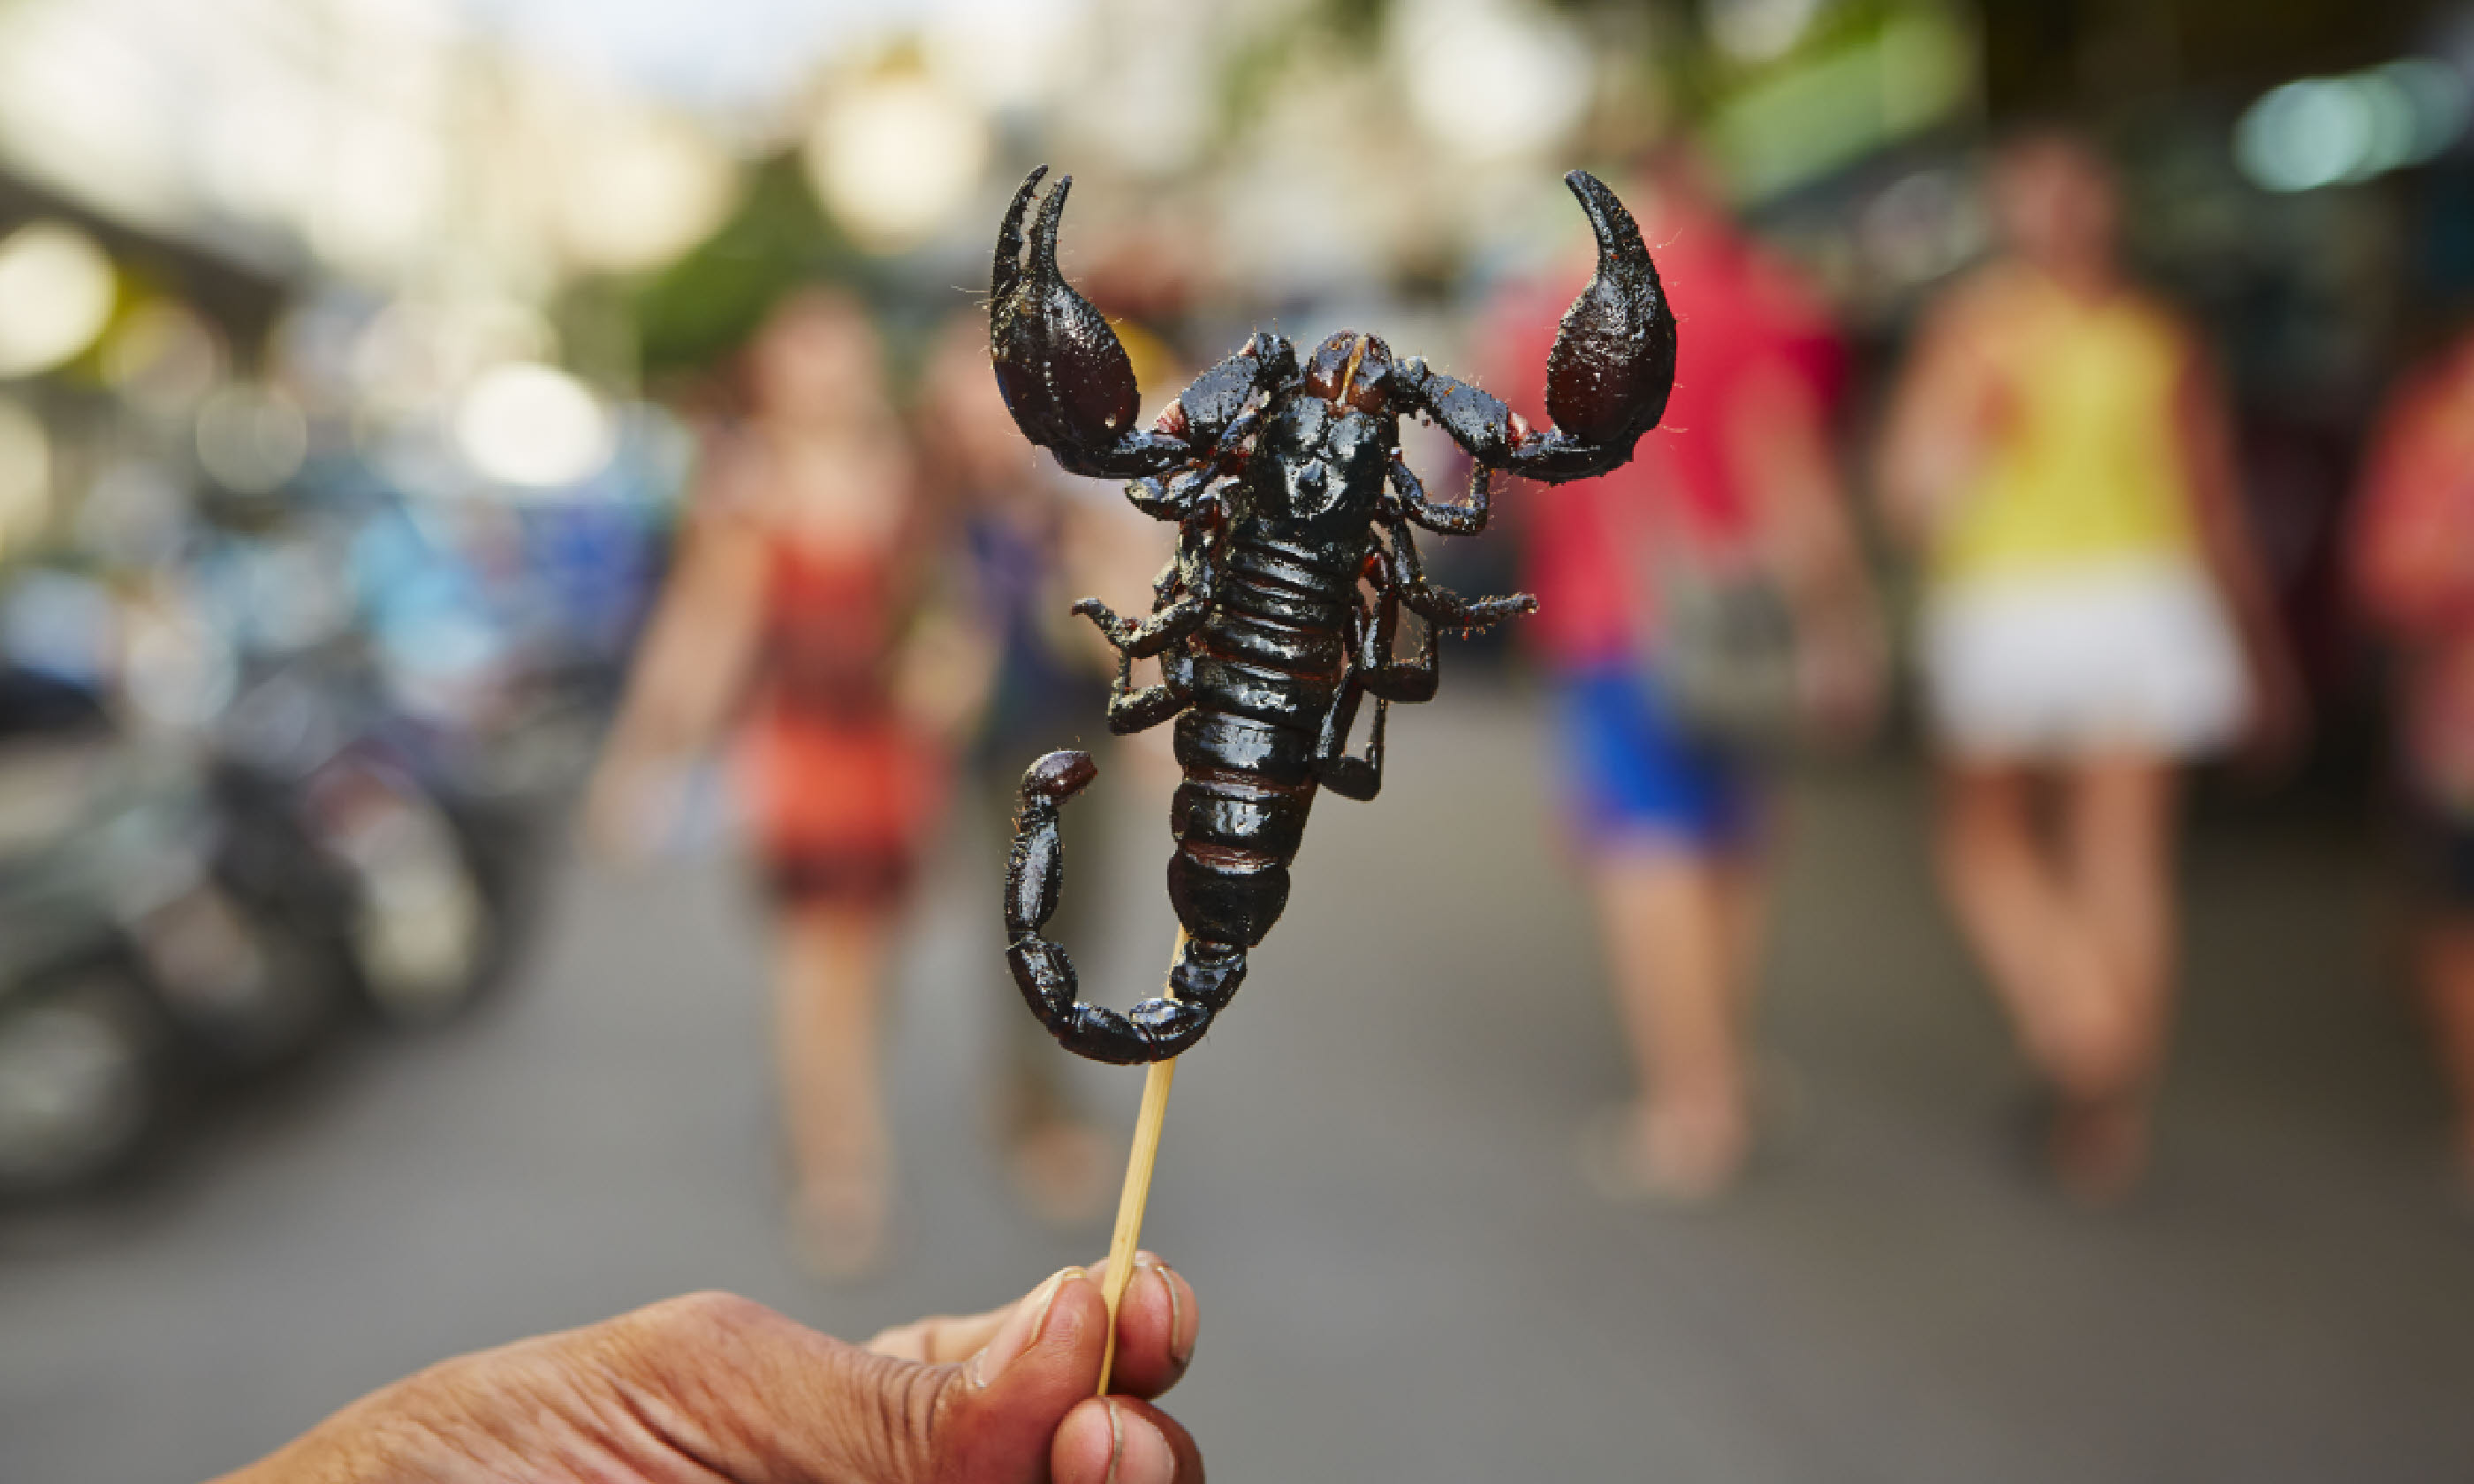 Roasted scorpion (Shutterstock)